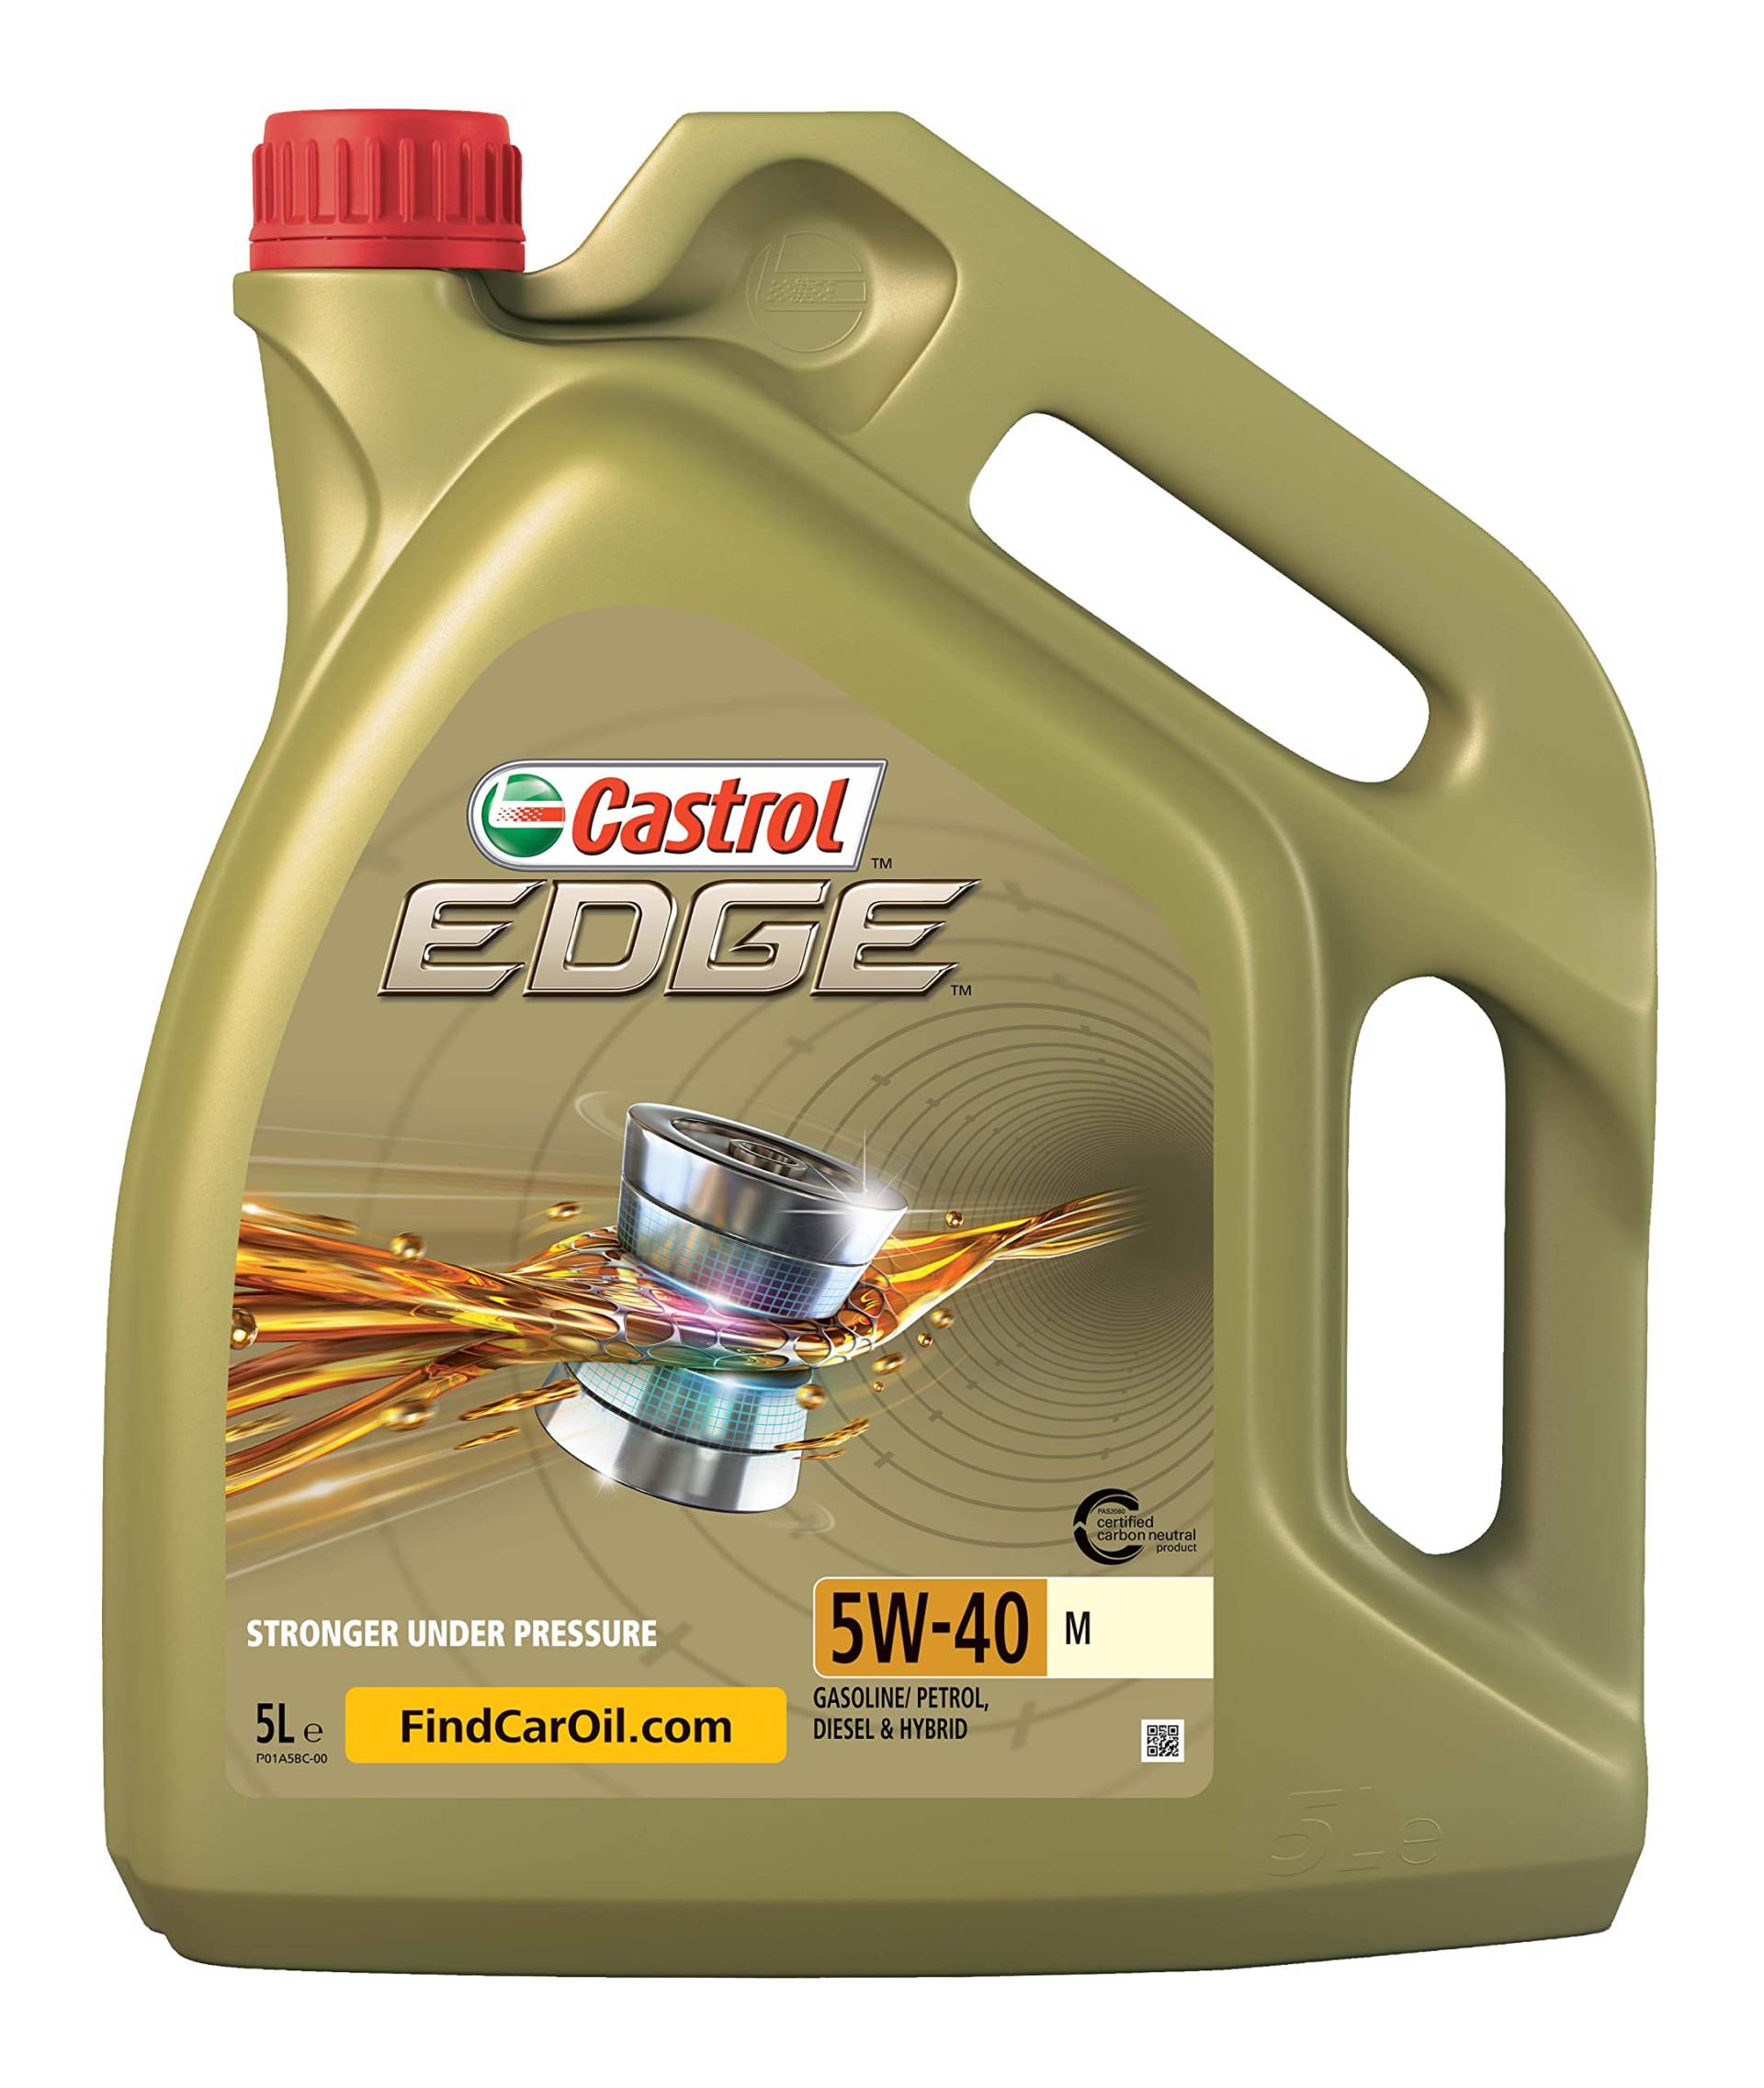 Castrol EDGE 5W-40 M, 5 Liter von Castrol